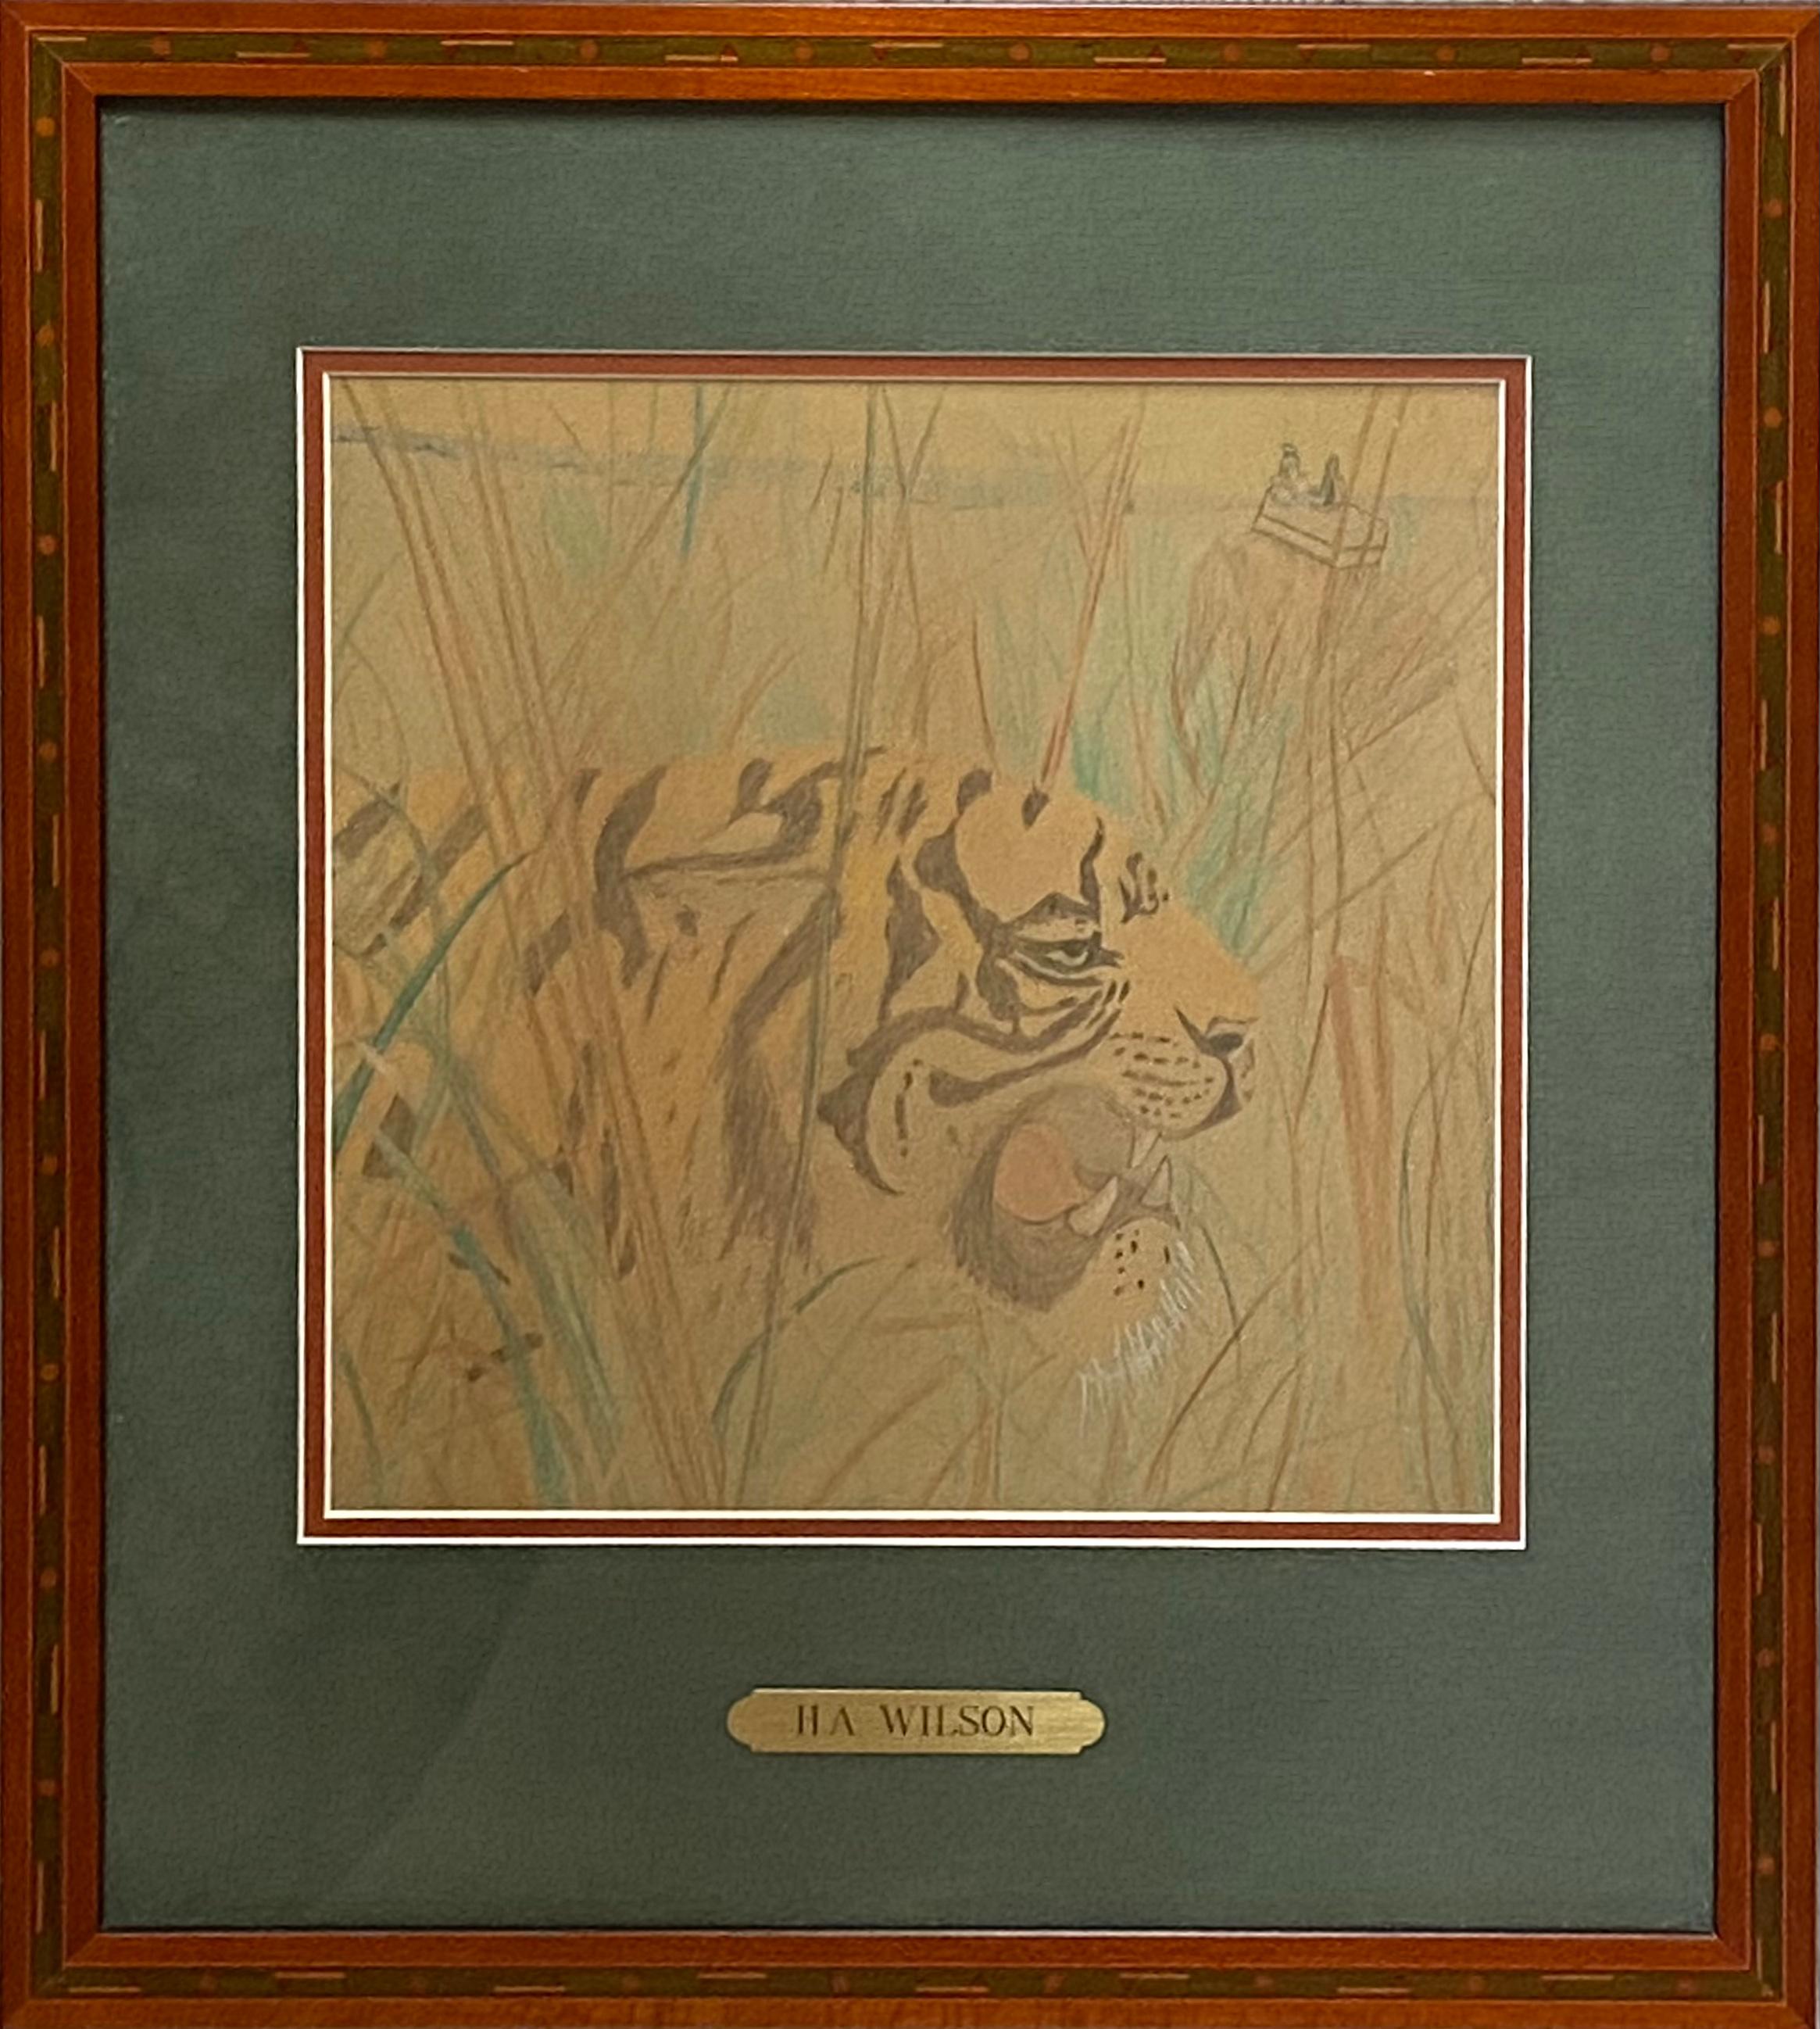 Original Buntstift auf Archivpapier eines Tigers in einer Dschungelumgebung, zugeschrieben H.A. Wilson. Keine sichtbare Unterschrift. Nicht außerhalb des Rahmens untersucht. Keine aktuellen Informationen über den Künstler. Ca. 1985. Der Zustand ist